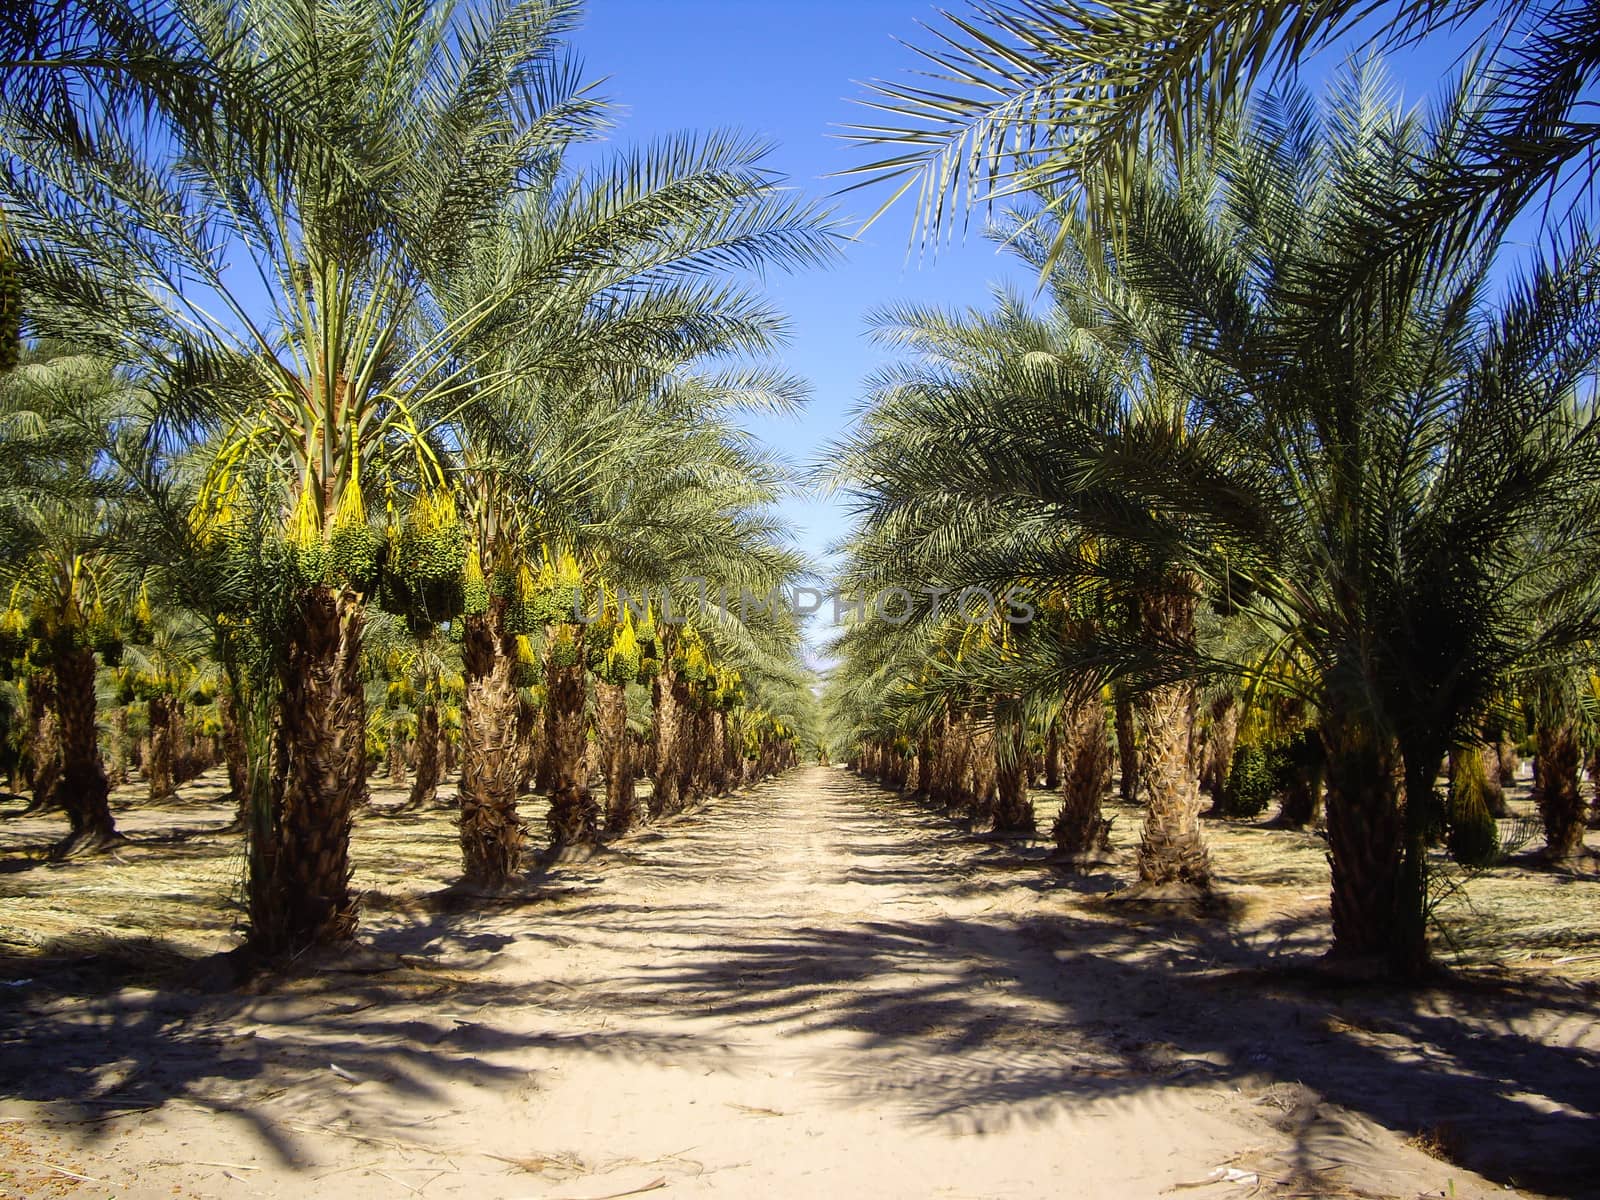 Date palms in California